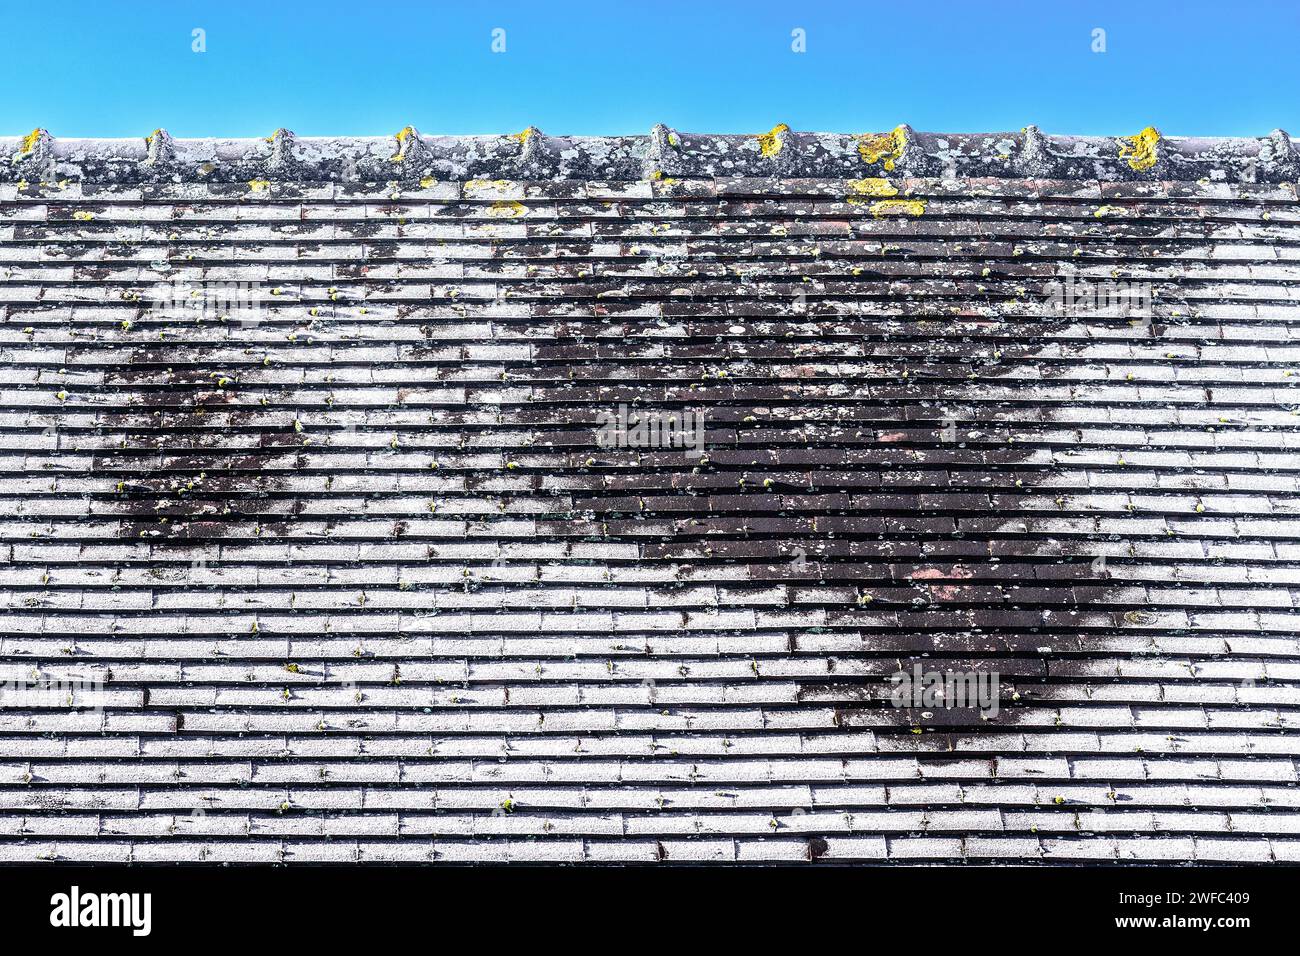 Frühmorgendfrost auf dem Dach des Ziegelhauses - im Zentrum Frankreichs. Stockfoto